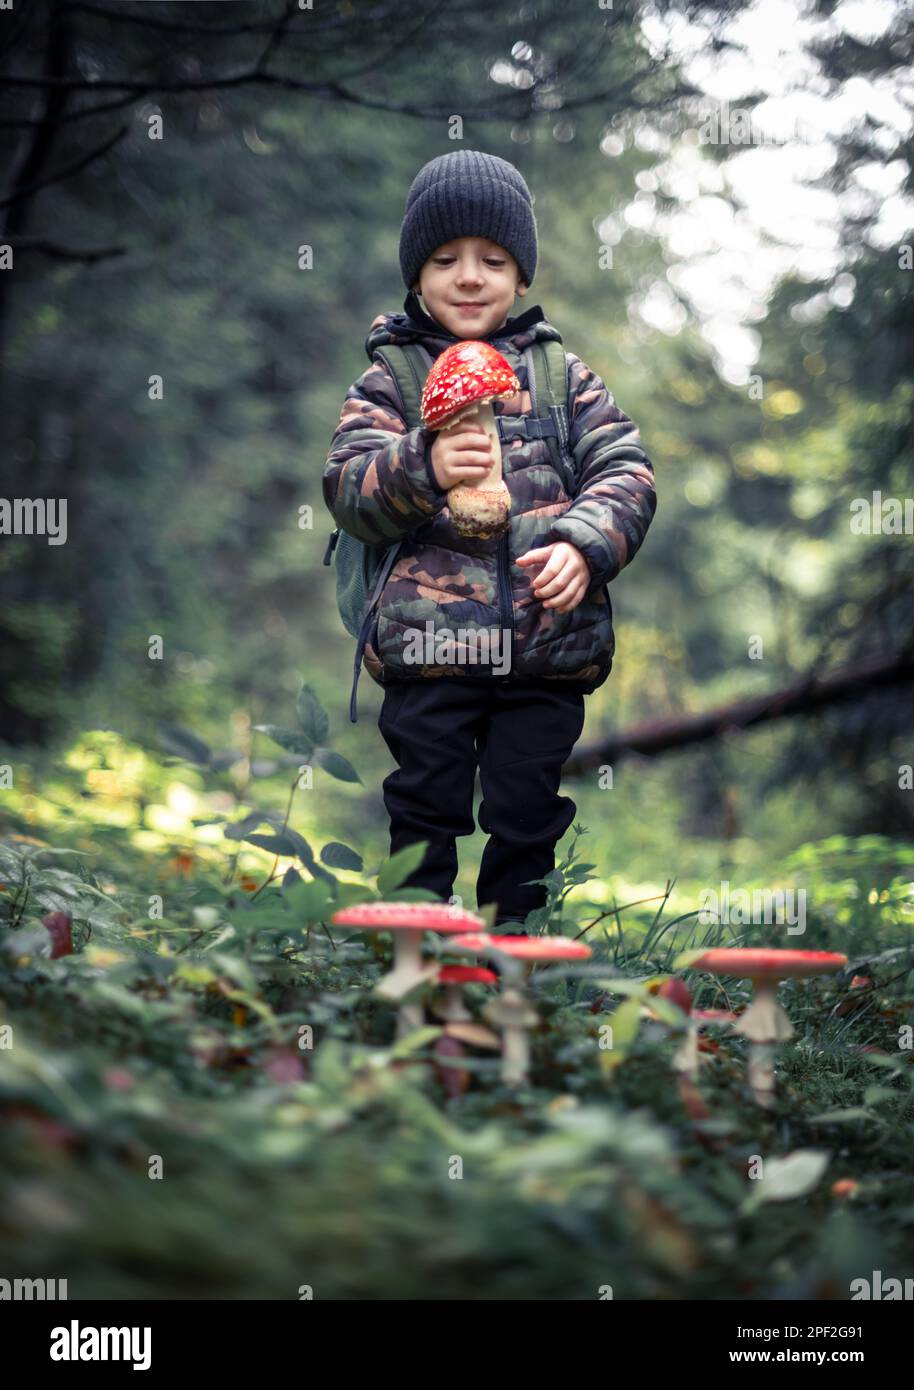 Kleines Kind mit Fly Agaric (Amanita muscari), wunderschöner rothaariger halluzinogener toxischer Pilz im Herbstwald. Kindheit mit naturliebendem Konzept Stockfoto